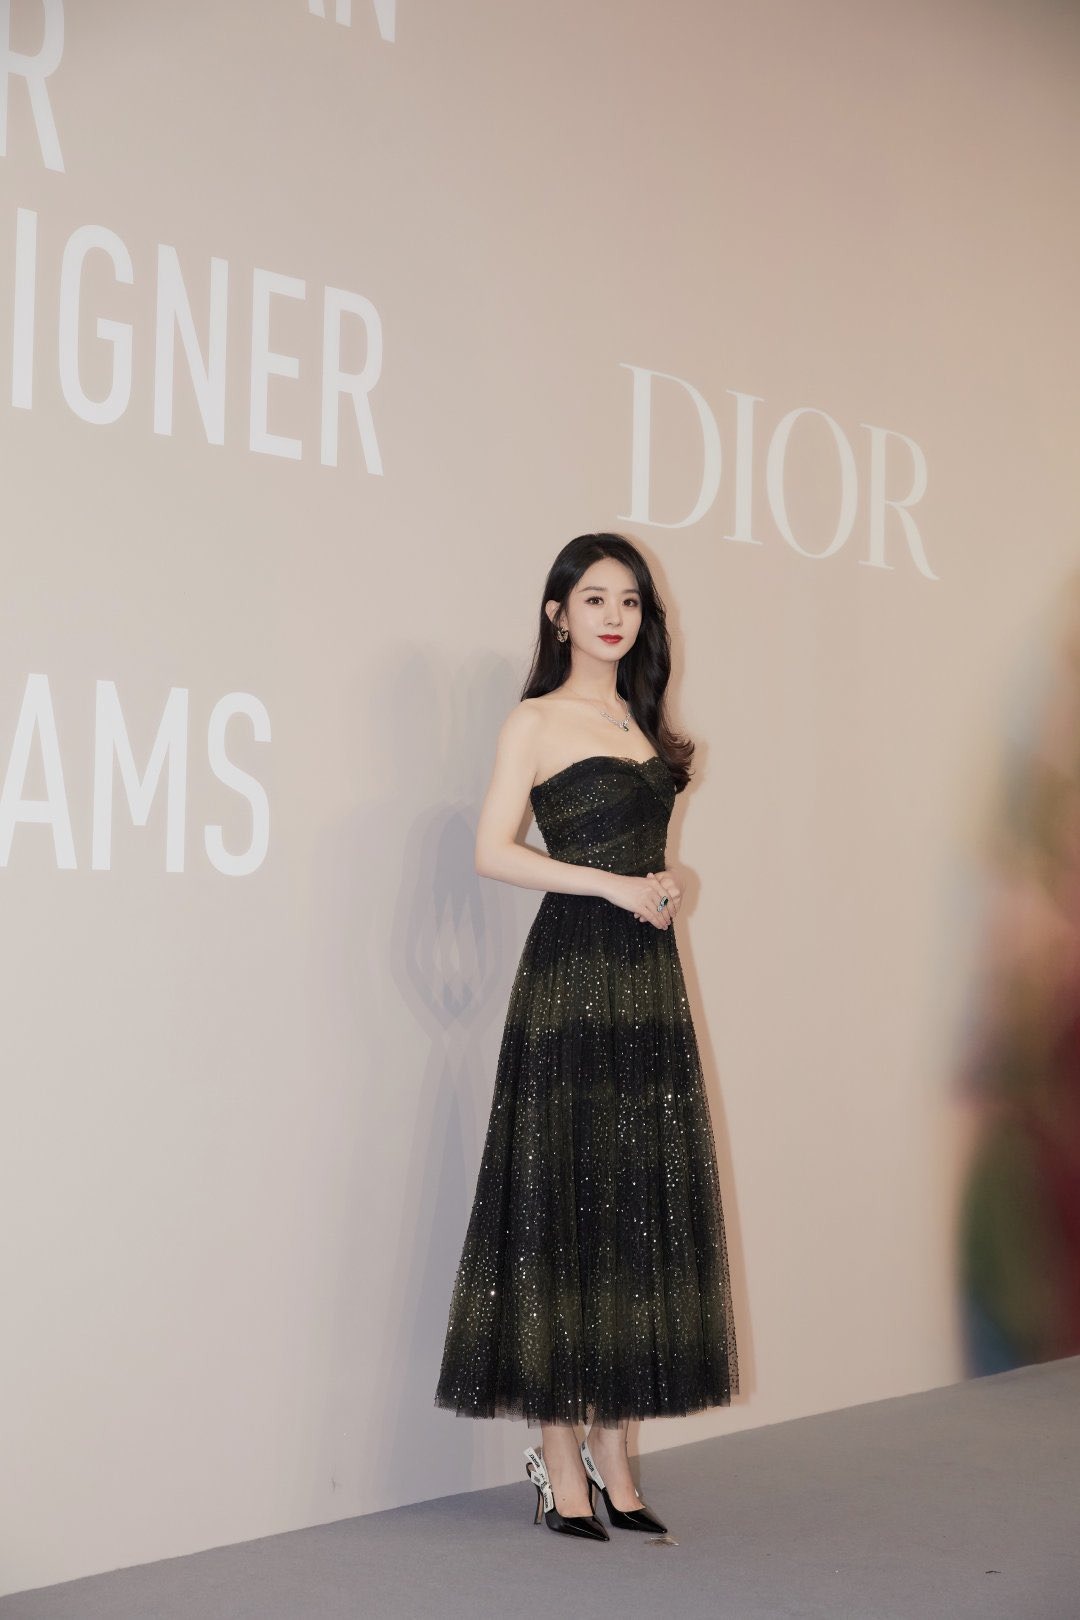 Triệu Lệ Dĩnh sang chảnh như quý cô thượng lưu tại triển lãm của Dior